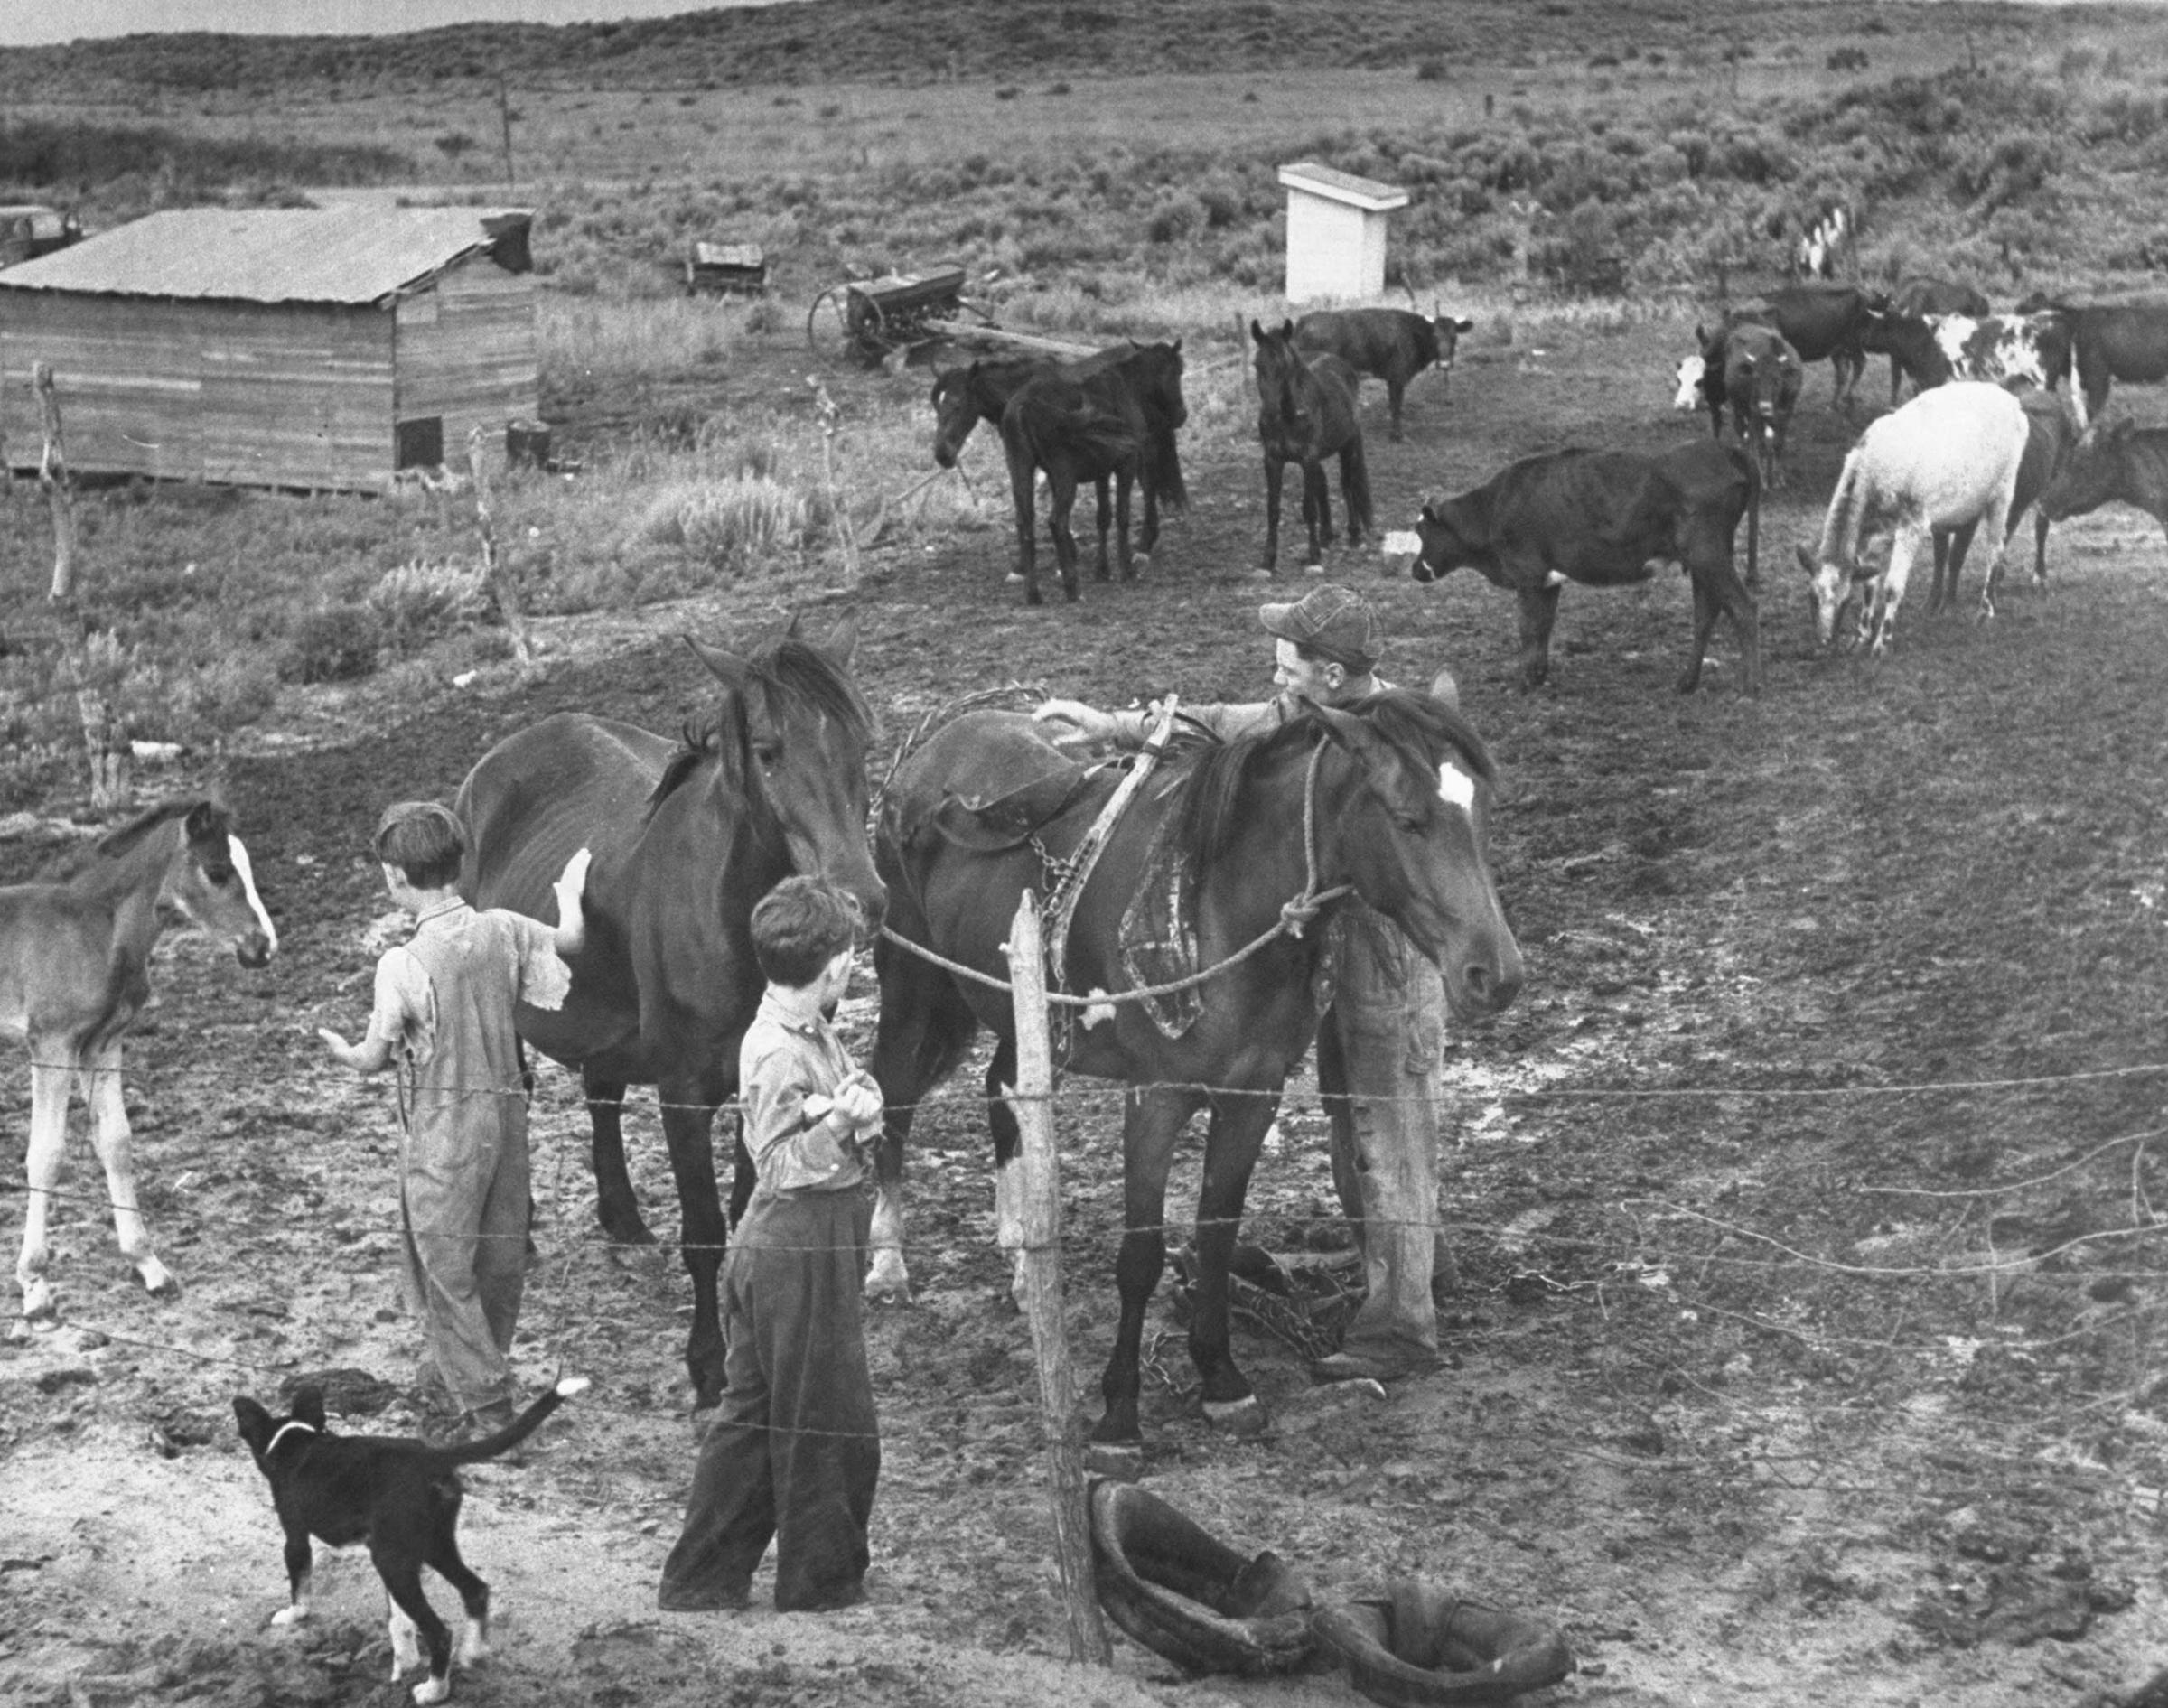 Farmer John Barnett and his sons work their farm, Oklahoma, 1942.